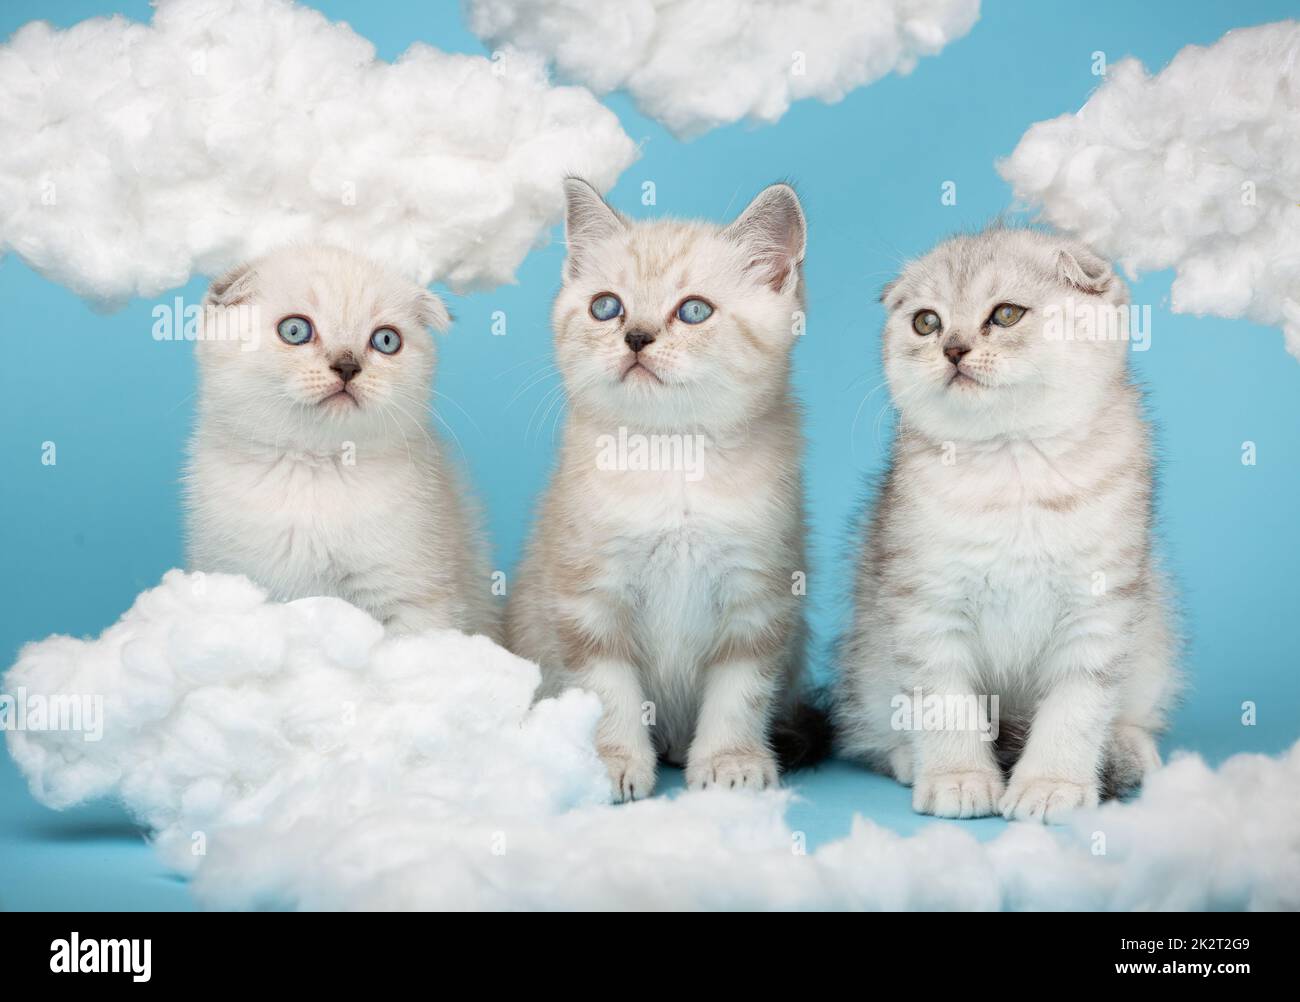 Primo piano ritratto di adorabili simpatici gattini di razza scozzese di crema, grigio e bianco, cuore di nuvole di cotone bianco su sfondo blu Foto Stock